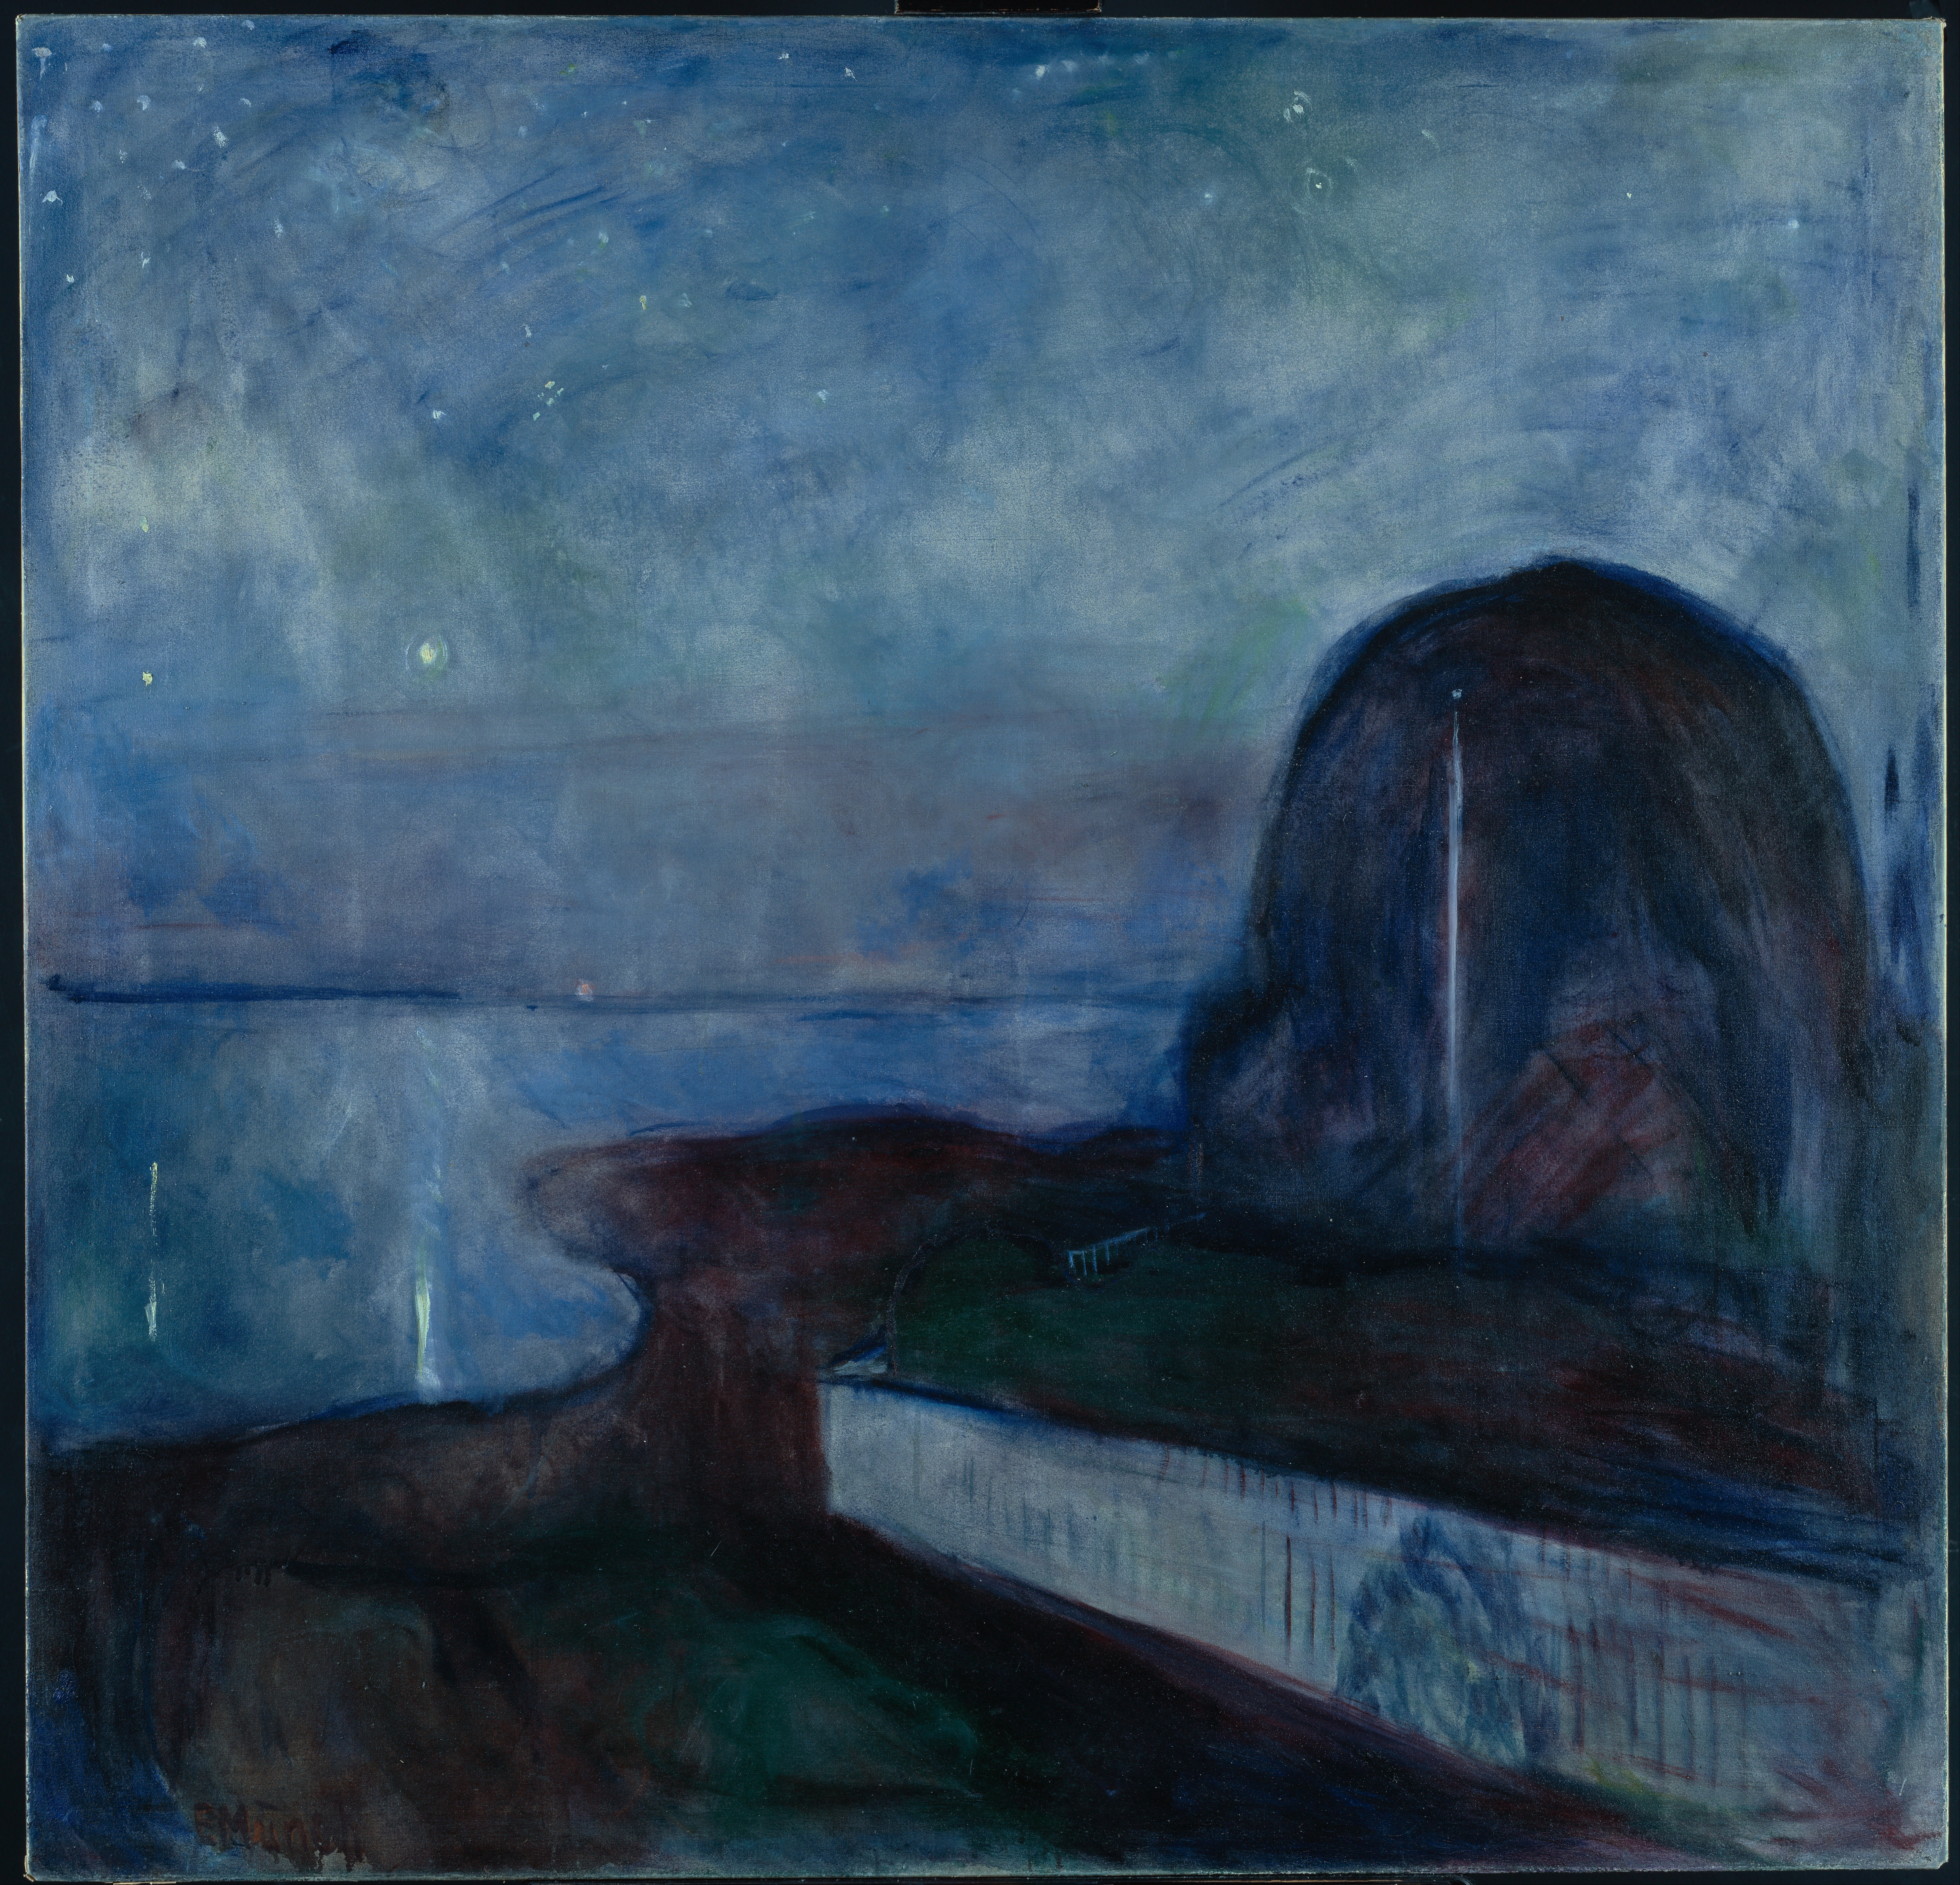 繁星之夜 by 爱德华 蒙克 - 1893 - 130 x 140 cm 保罗·盖蒂博物馆